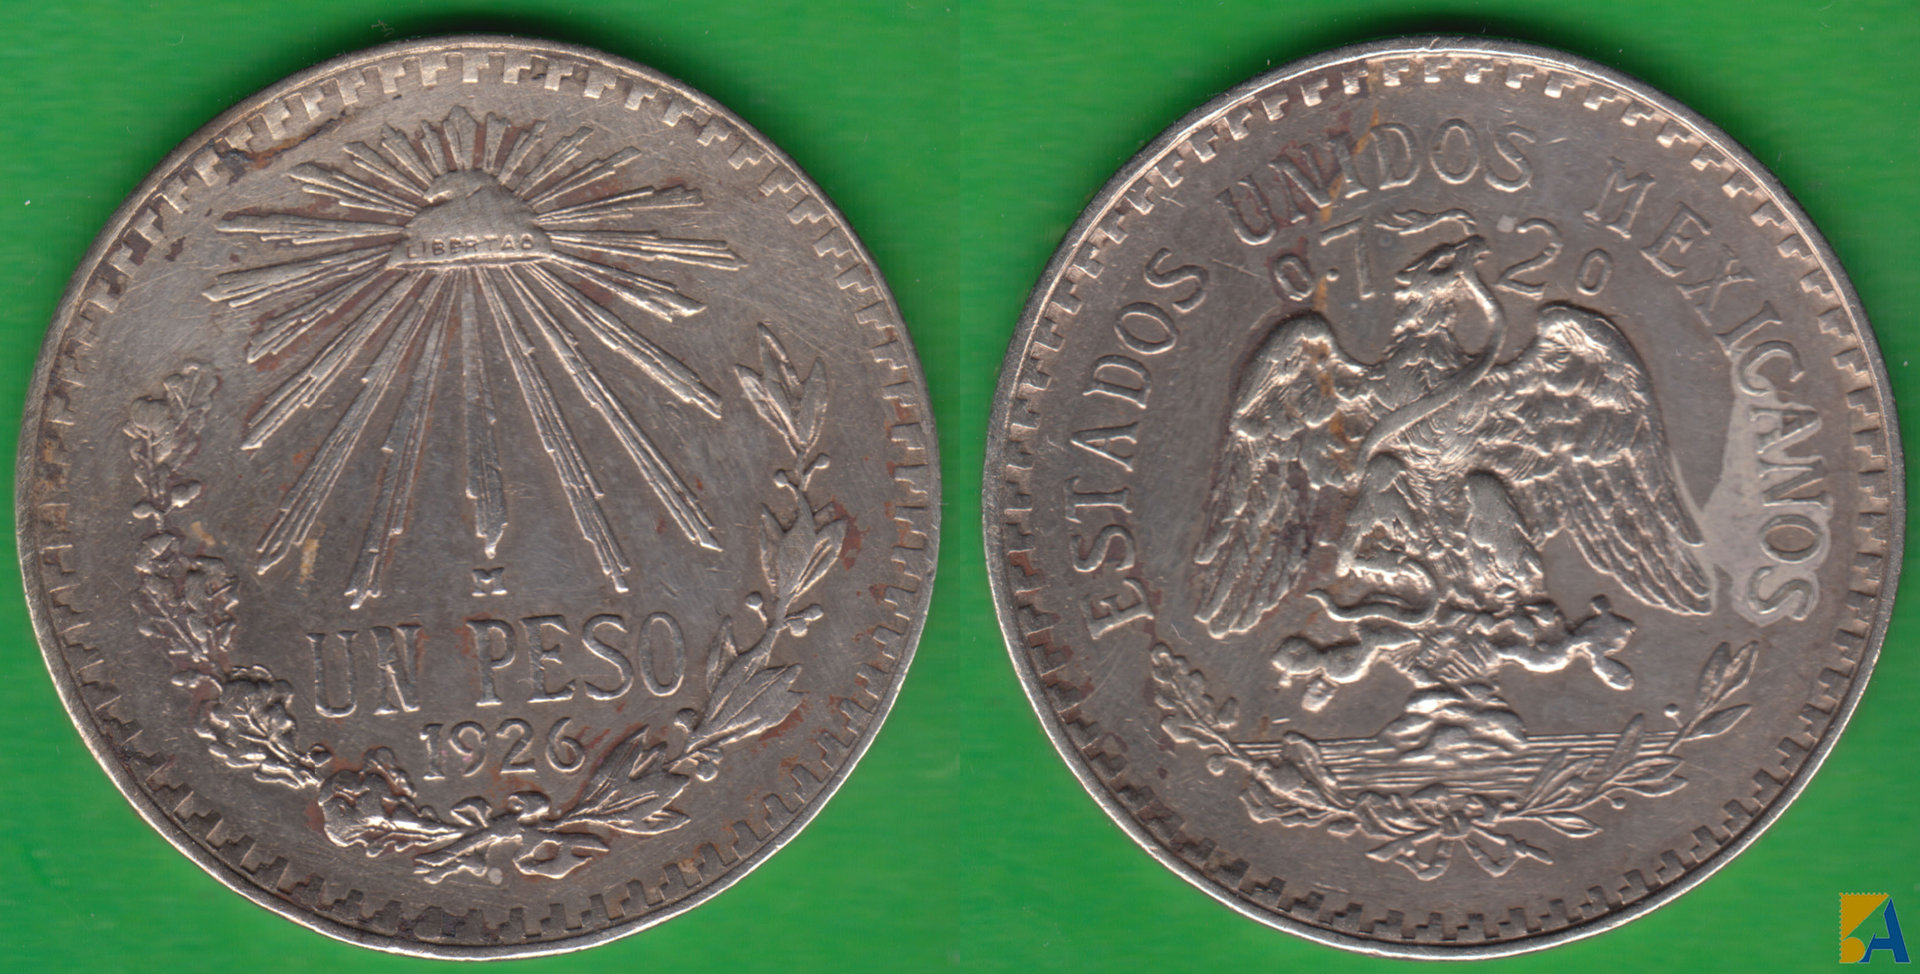 MEJICO - MEXICO. 1 PESO DE 1926. PLATA 0.720. (2)